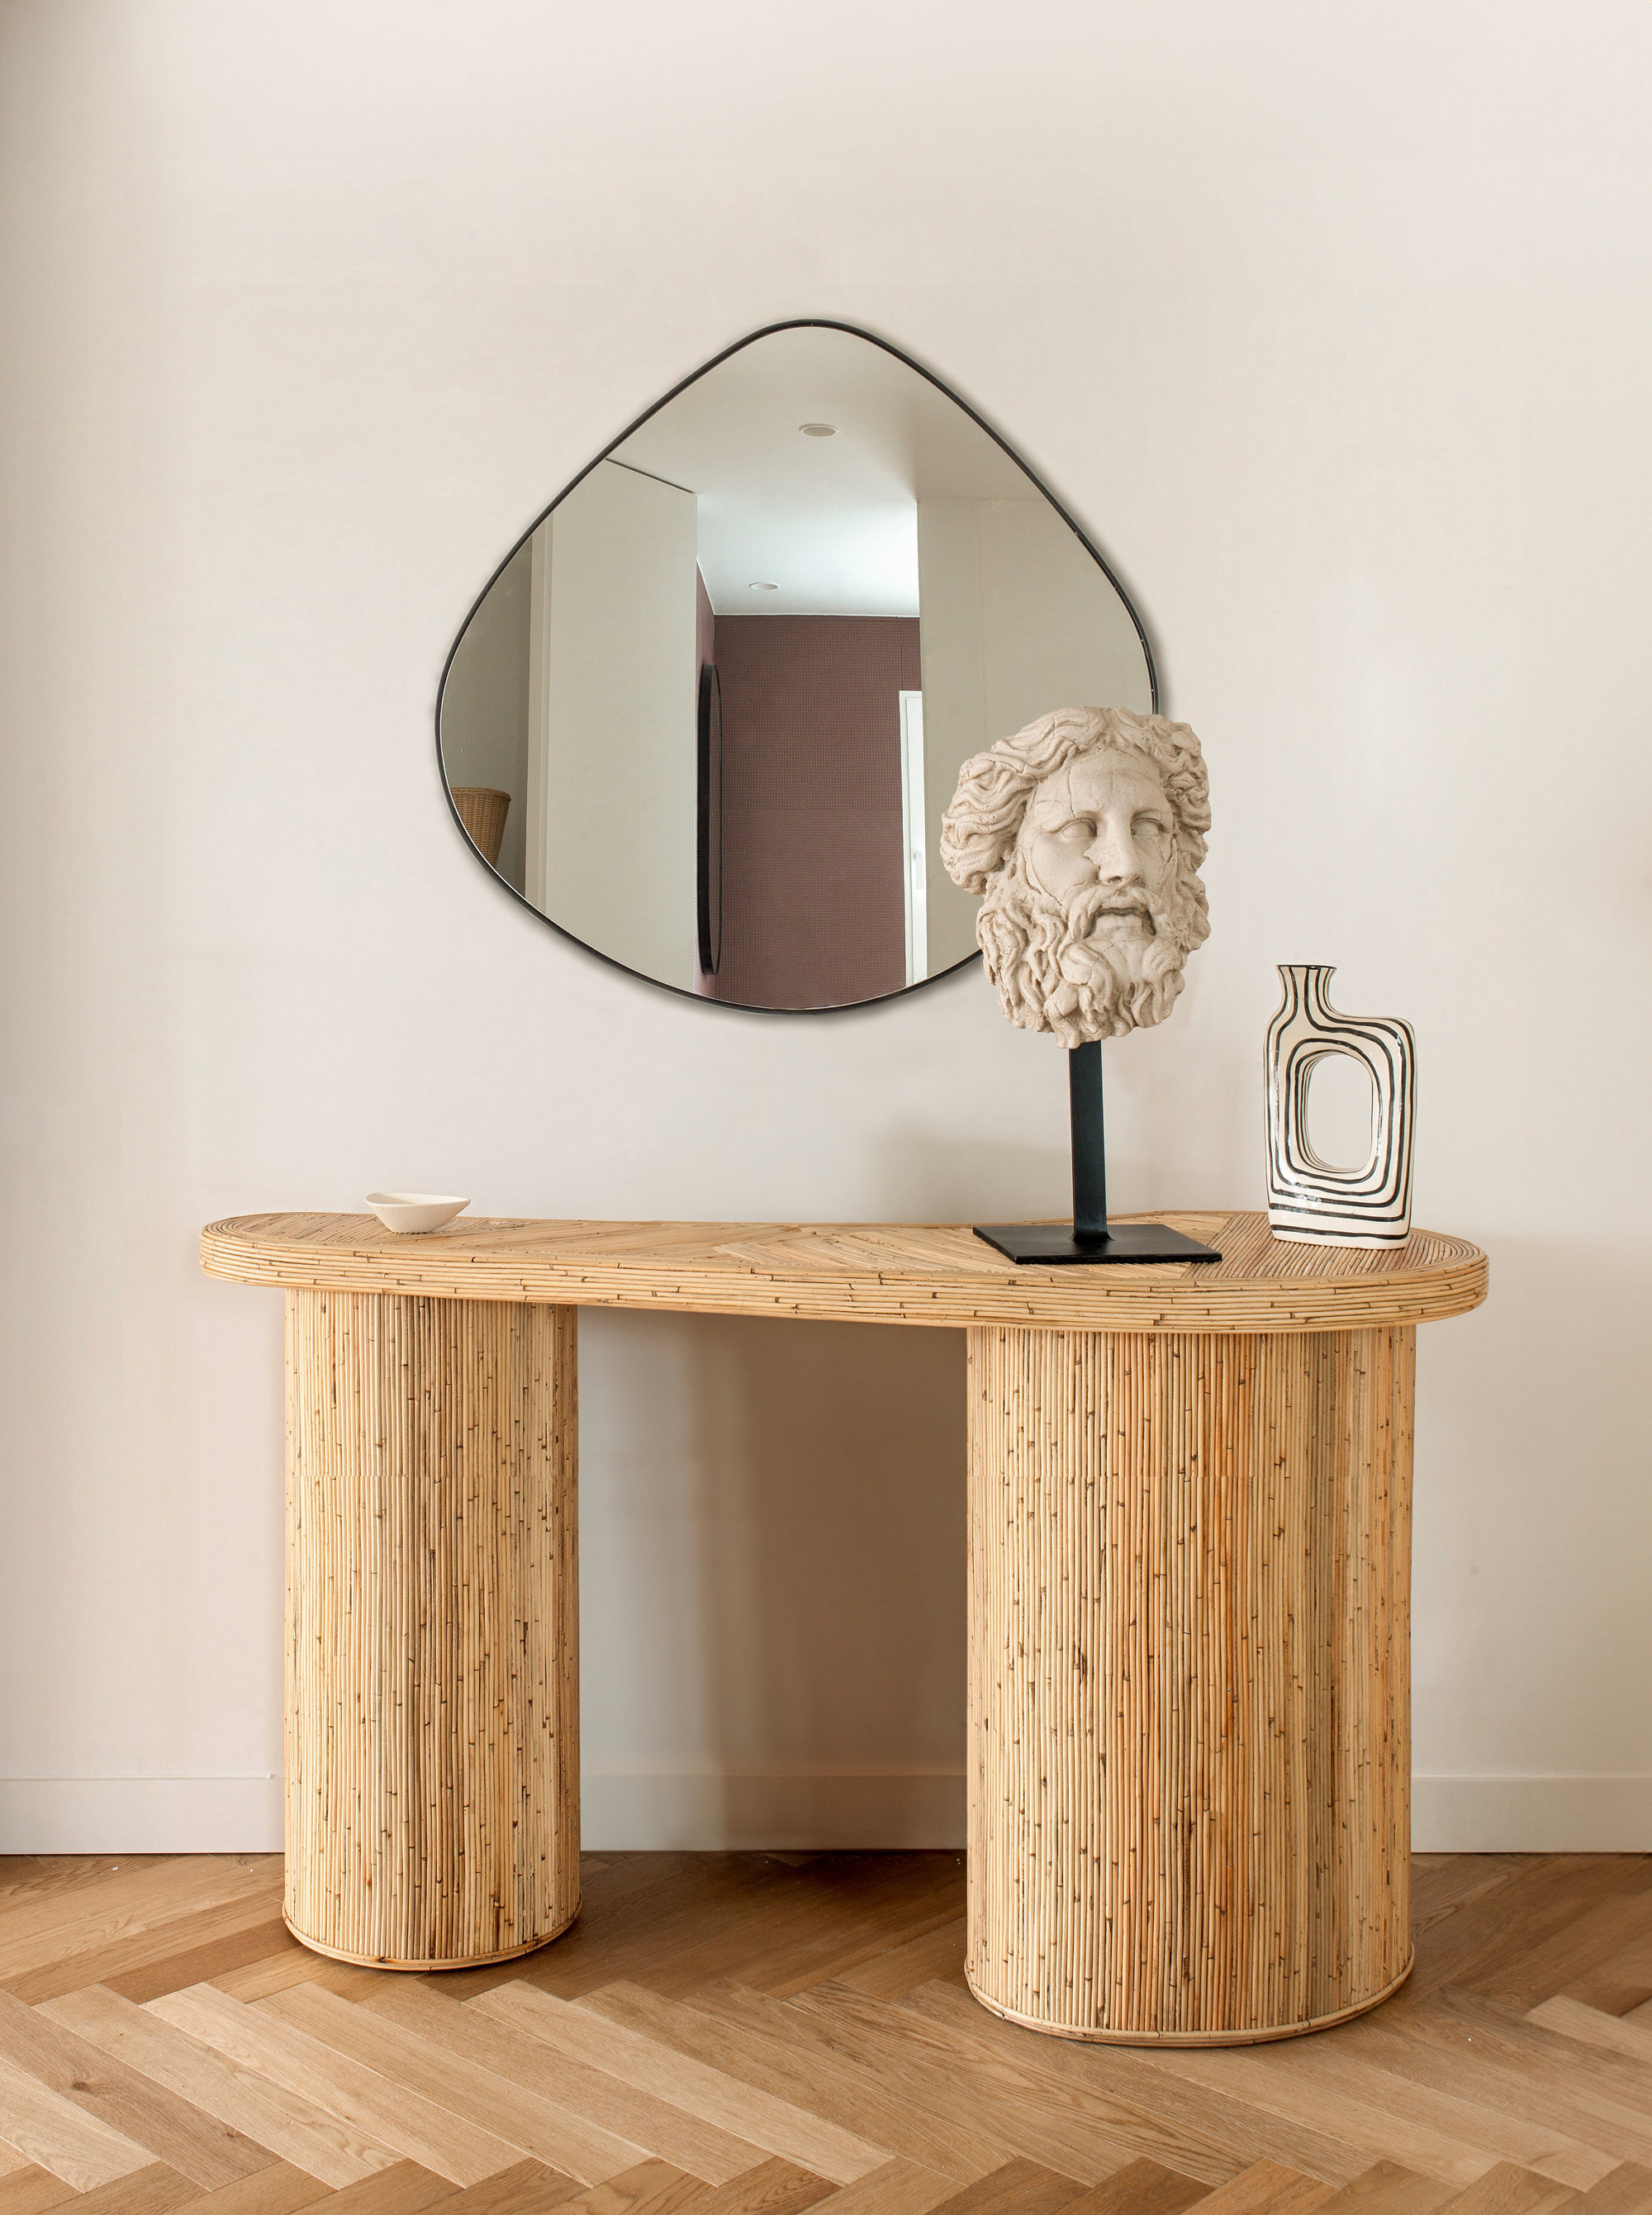 Recibidor con mueble, espejo en gota y escultura casa Ayala